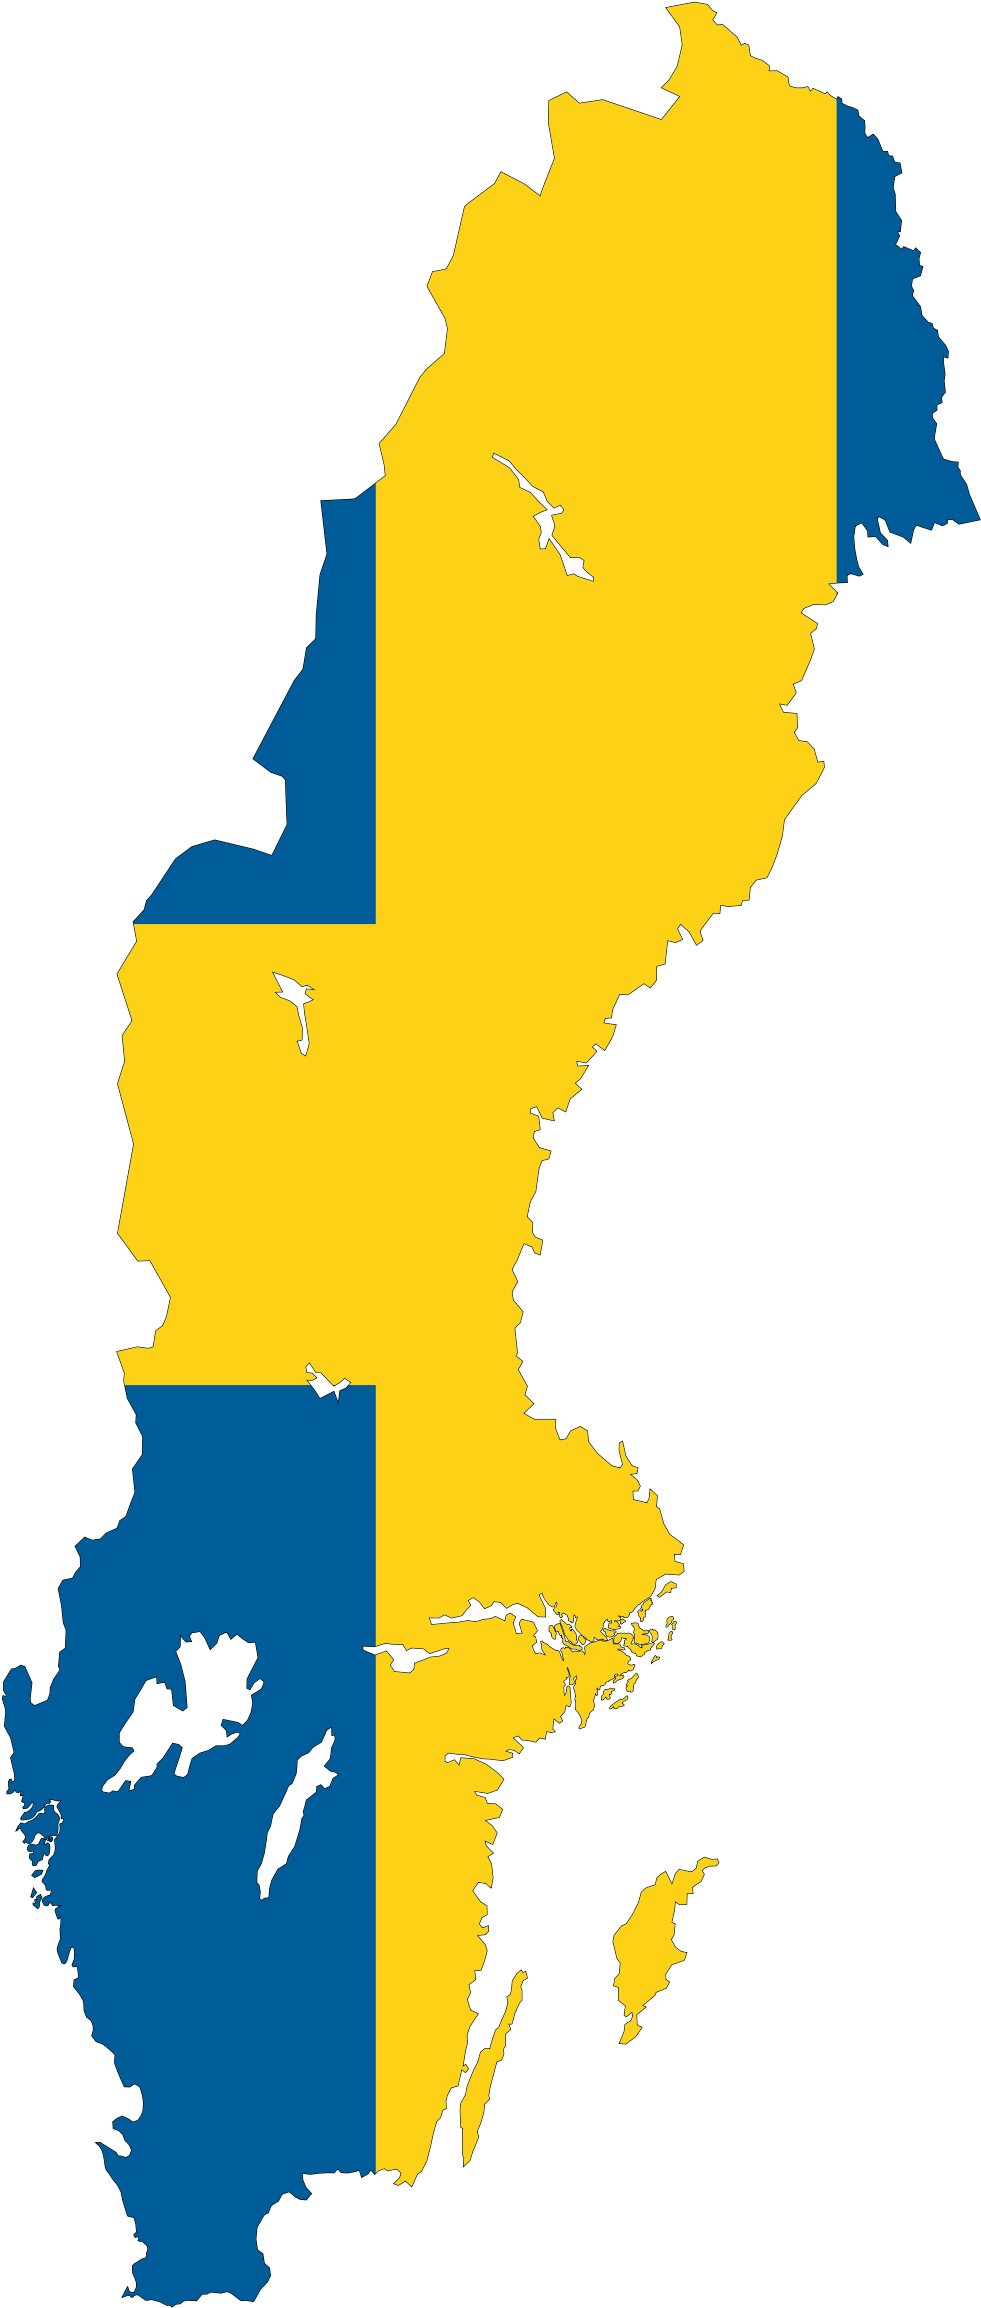 Sweden Flag Transparent File